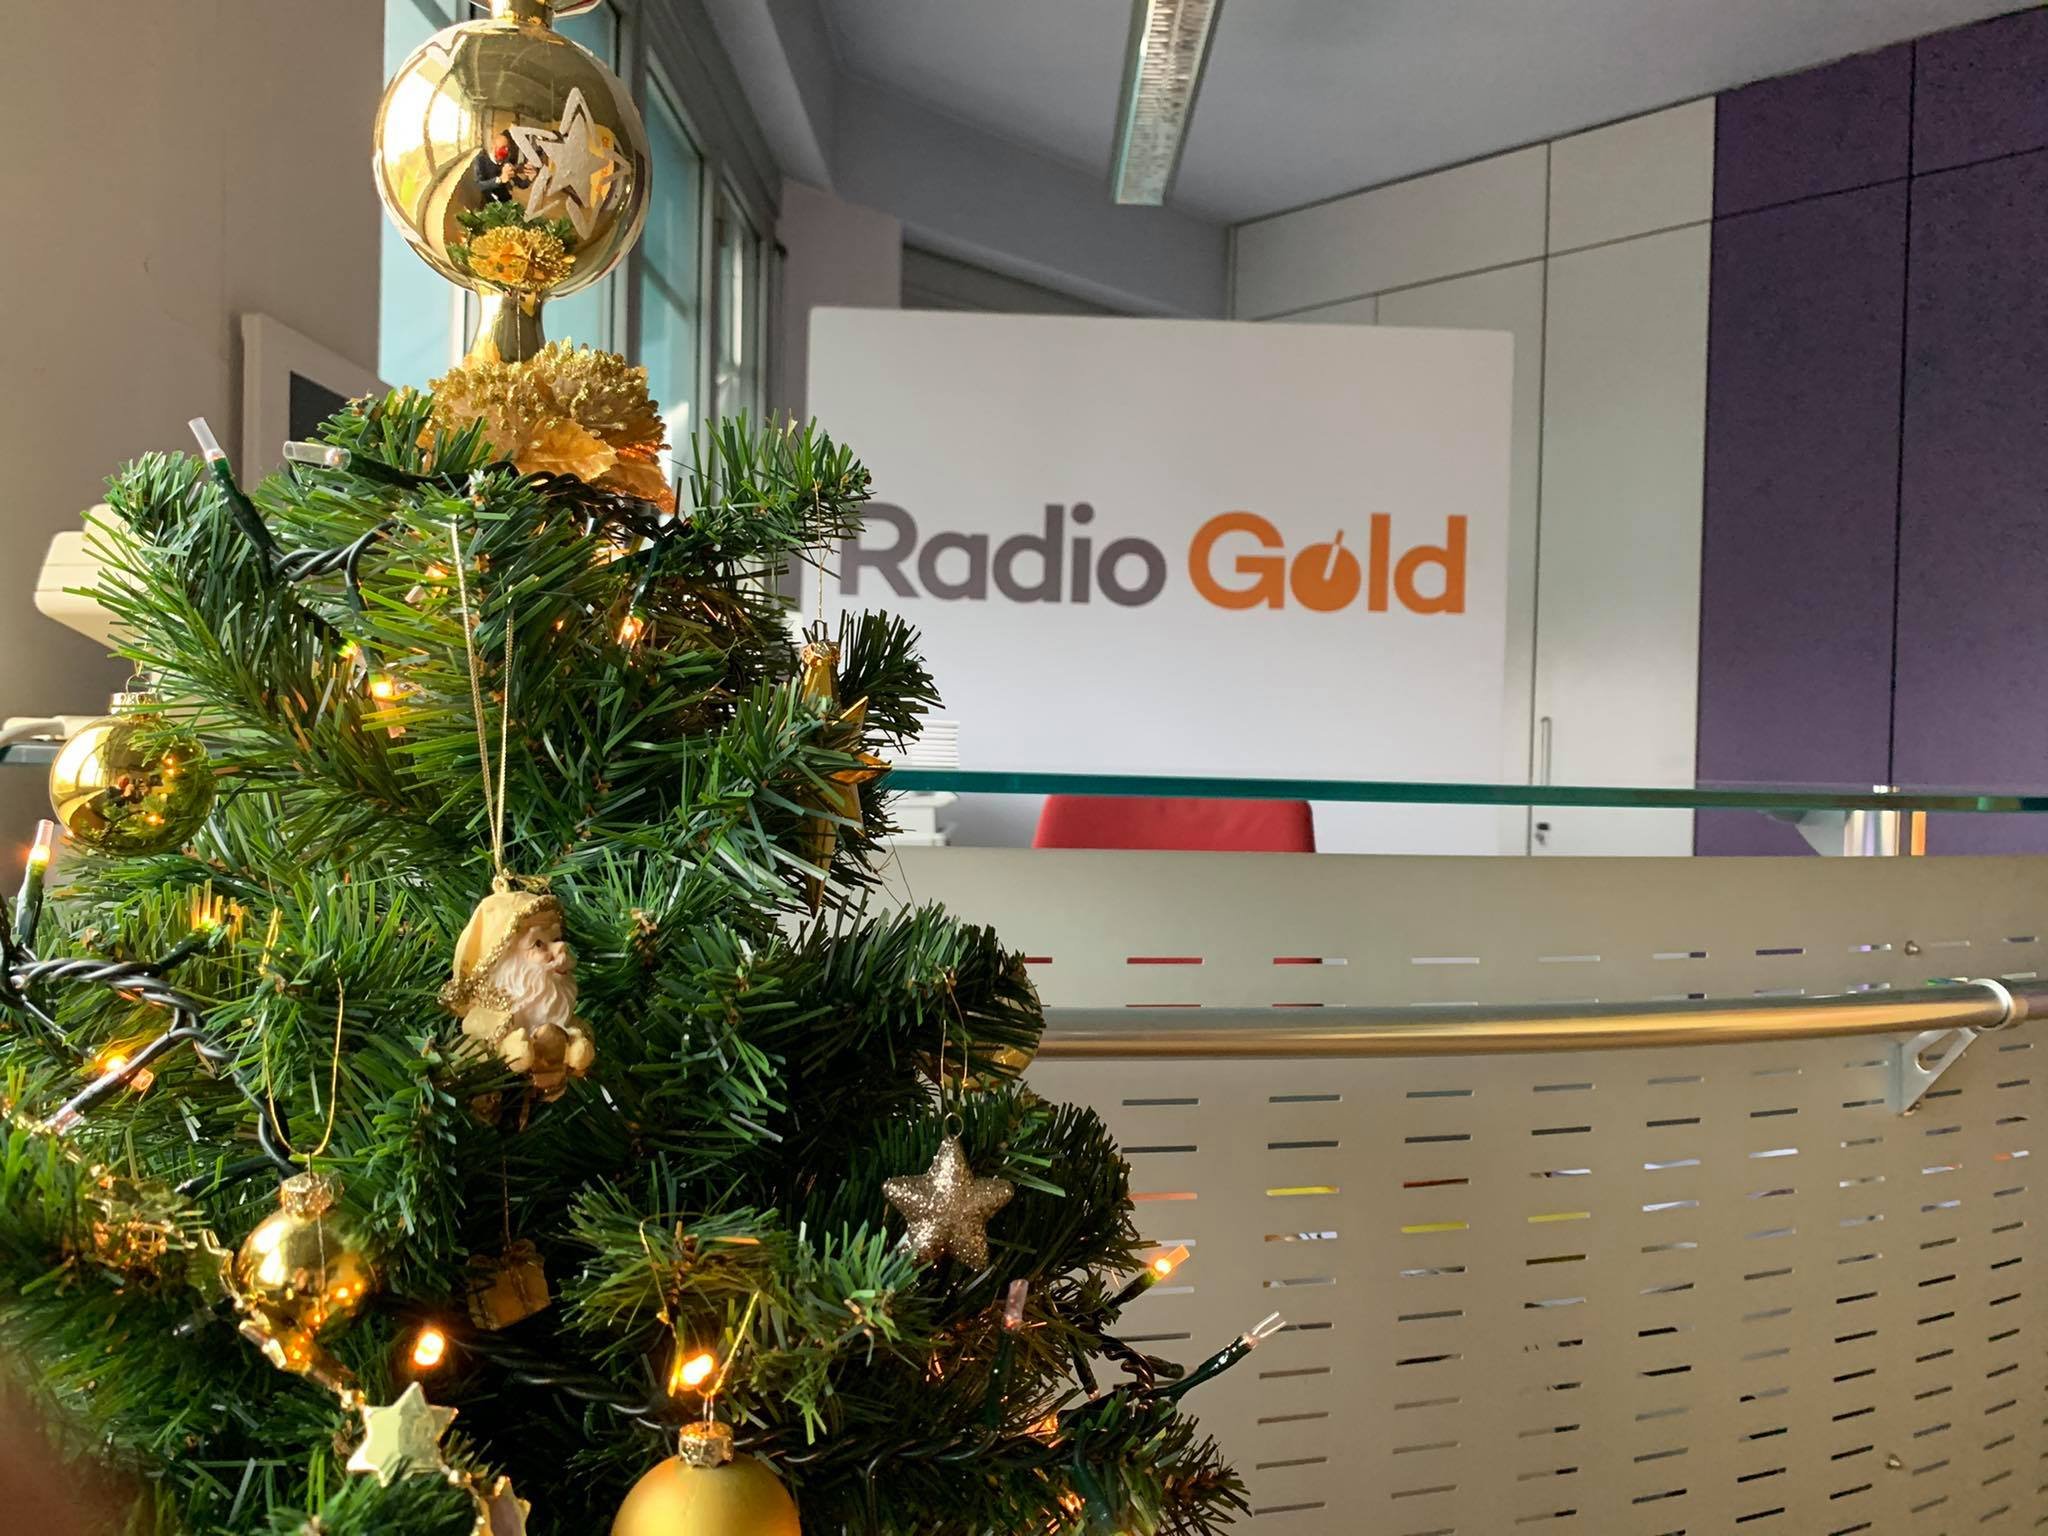 RadioGold non ti lascia solo nemmeno il 25 dicembre: dalle 9 alle 12 via allo speciale di Natale